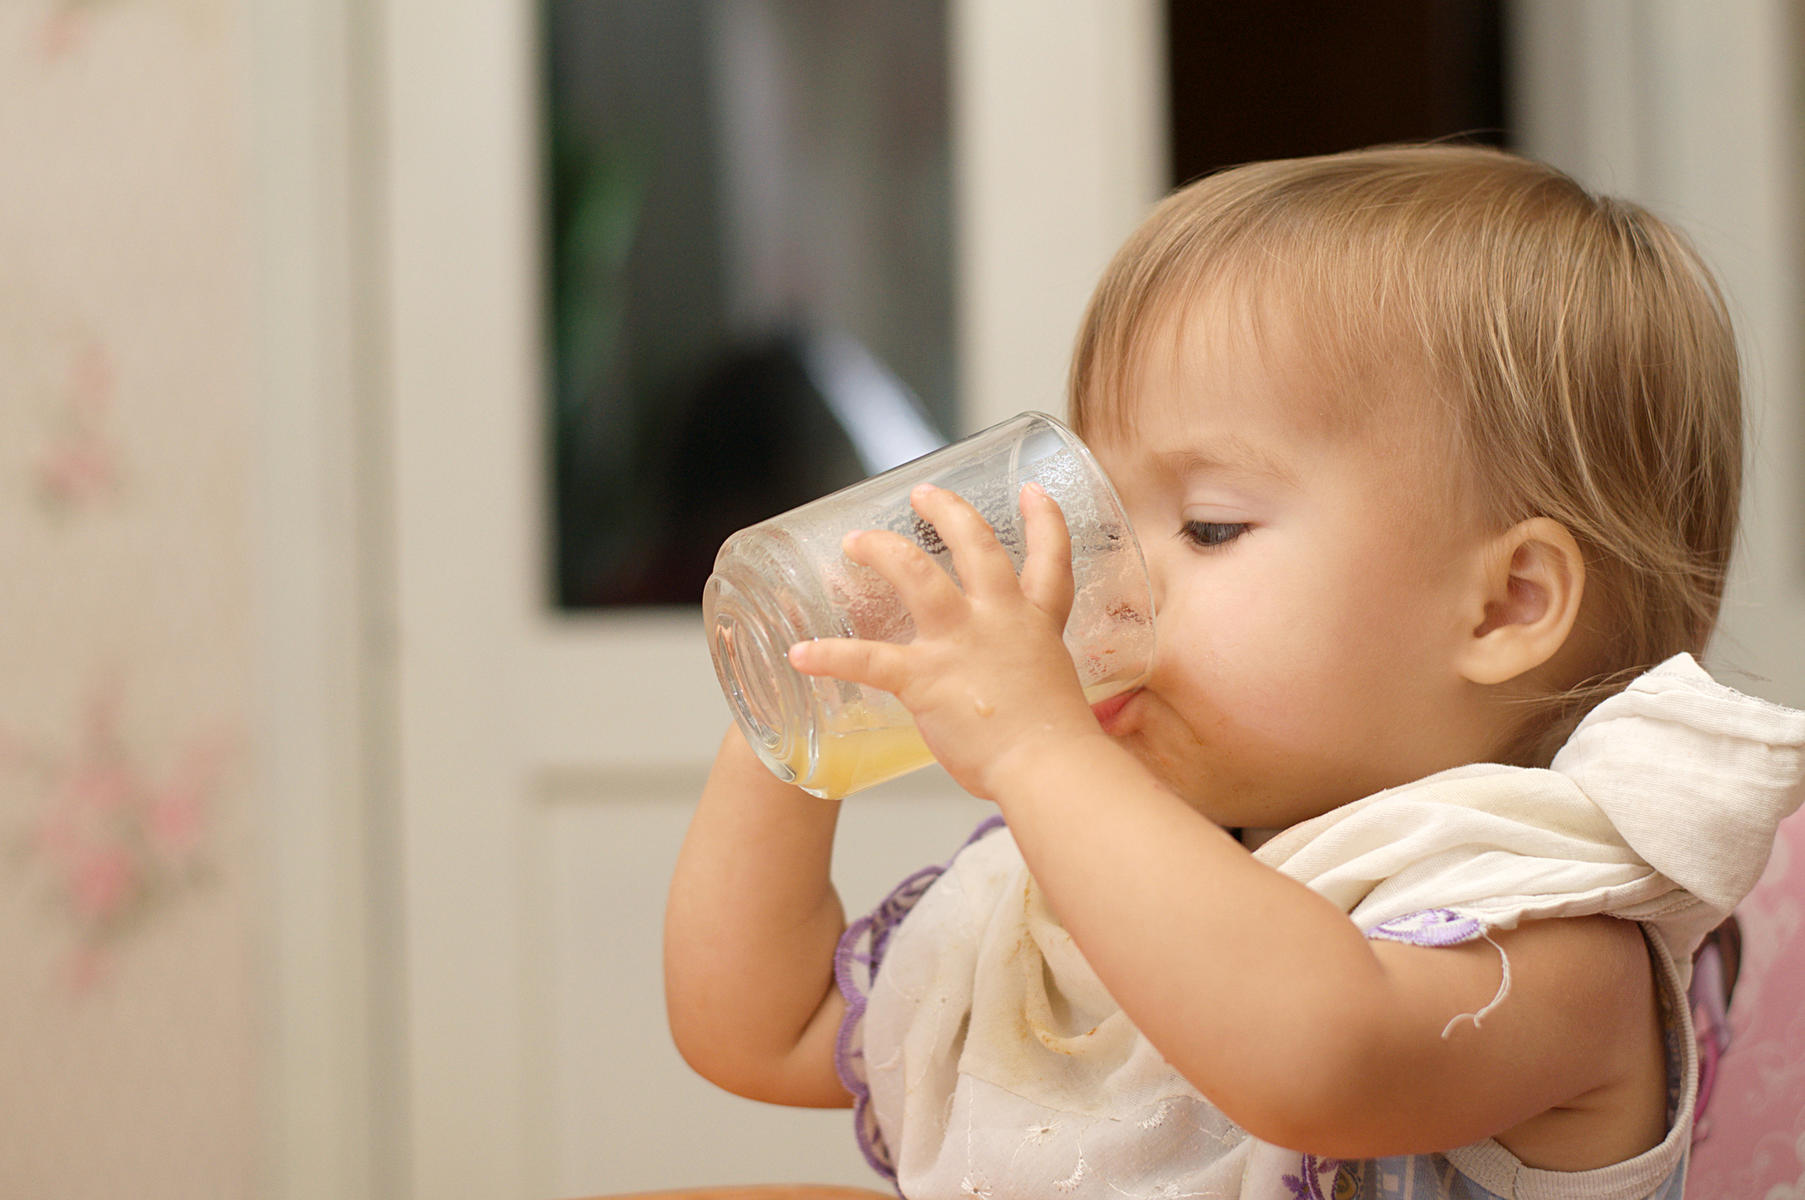 Nuevas directrices sobre los zumos de frutas: Menos para los niños y nada para los bebés